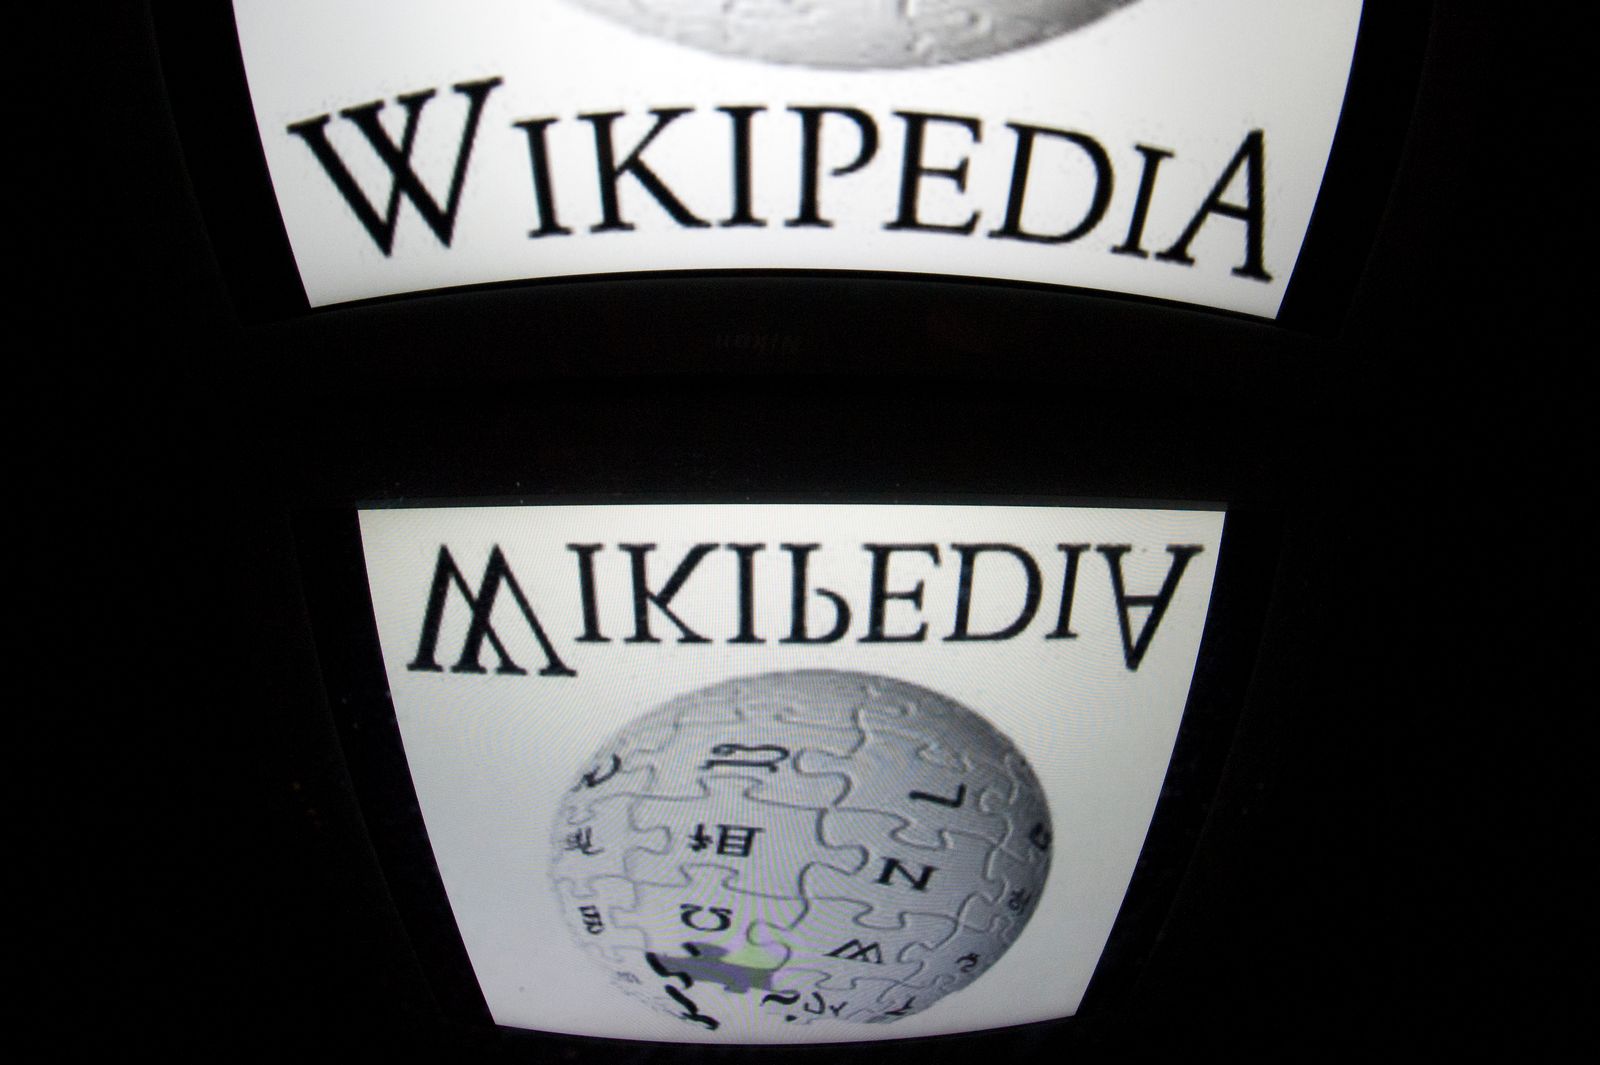  موسوعة ويكيبيديا التعاونية المفتوحة على الإنترنت تحتفل بعيدها العشرين  - AFP